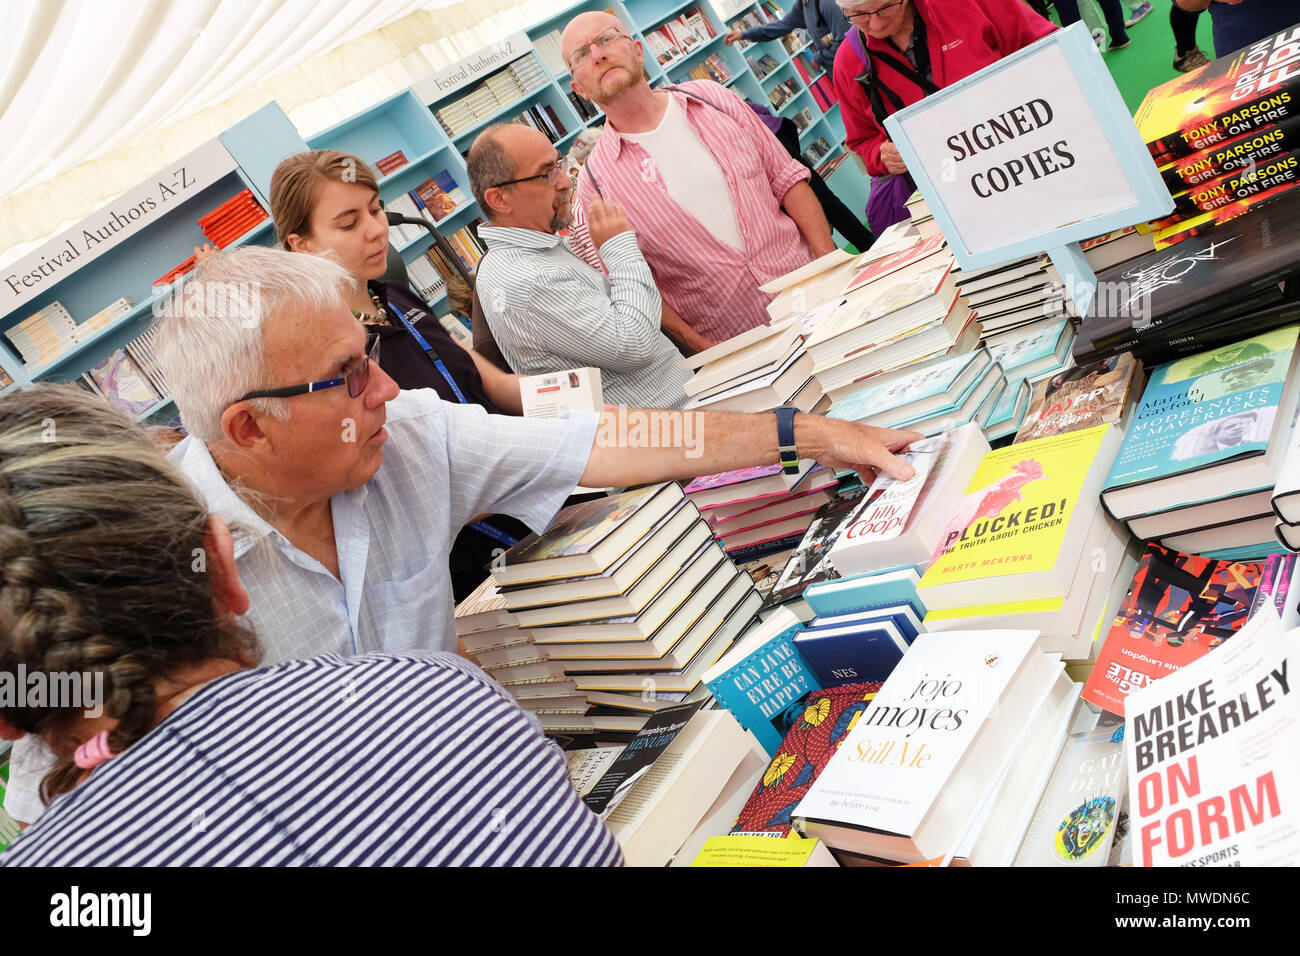 Hay Festival, Heu auf Wye, UK-Freitag, 1. Juni 2018 - die Besucher der Hay Festival bookshop suchen eine Auswahl an signierten Exemplare der Bücher von auhors erscheinen auf dem Festival - Foto Steven Mai/Alamy leben Nachrichten Stockfoto